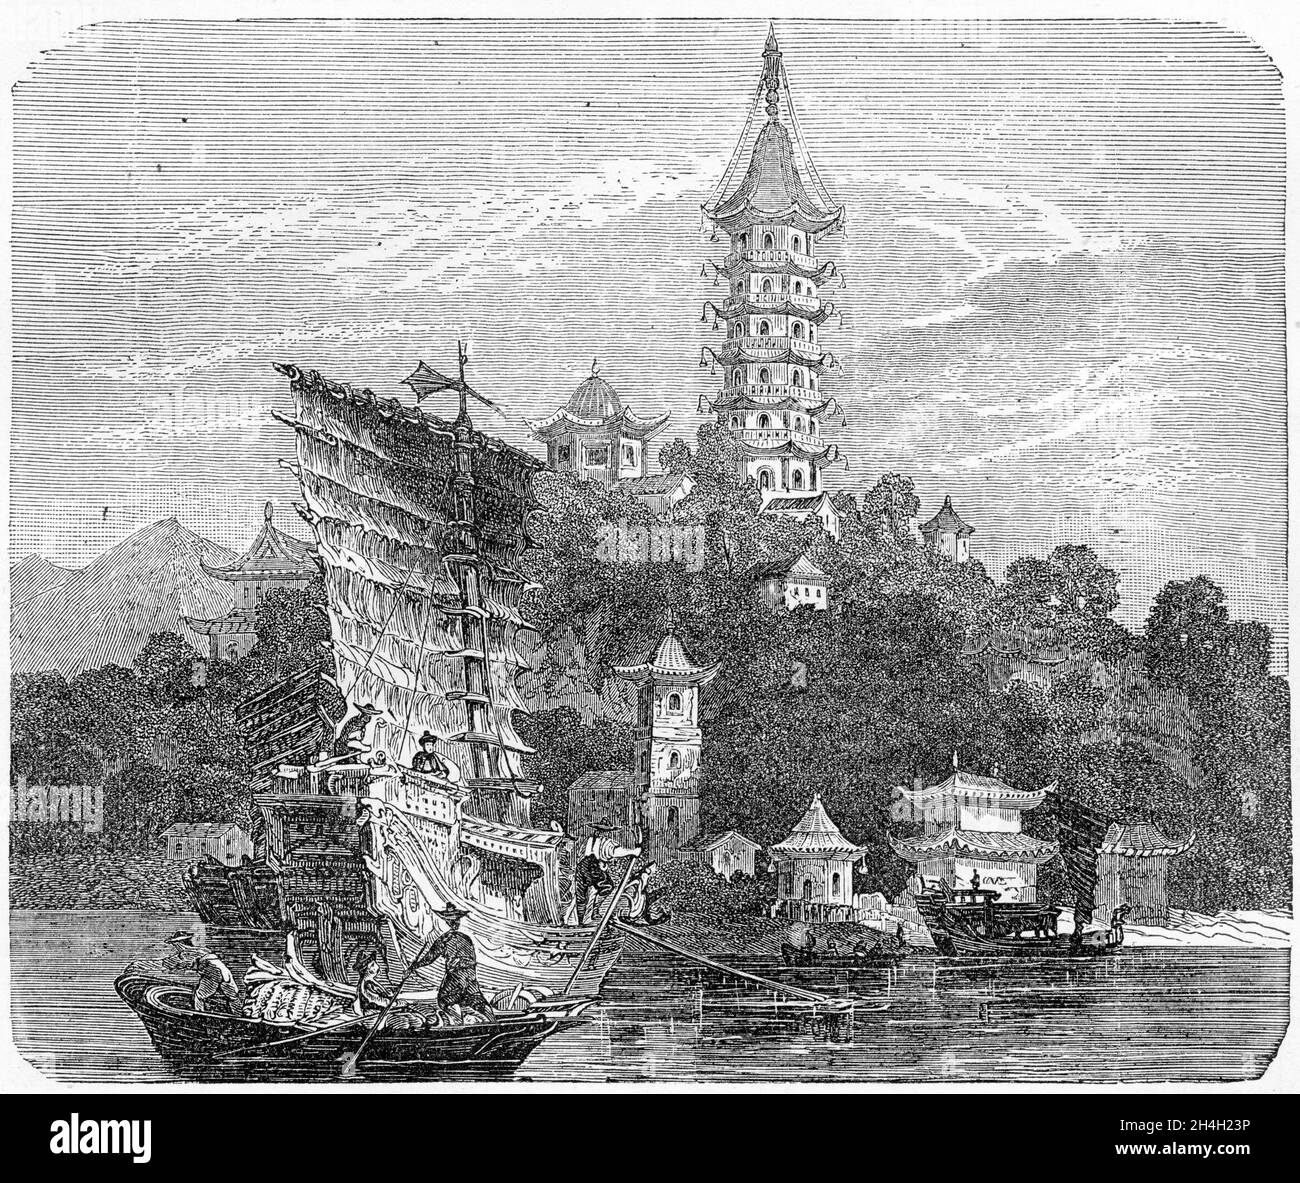 Gravure d'une vue sur le canal impérial, Chine, vers 1860 Banque D'Images